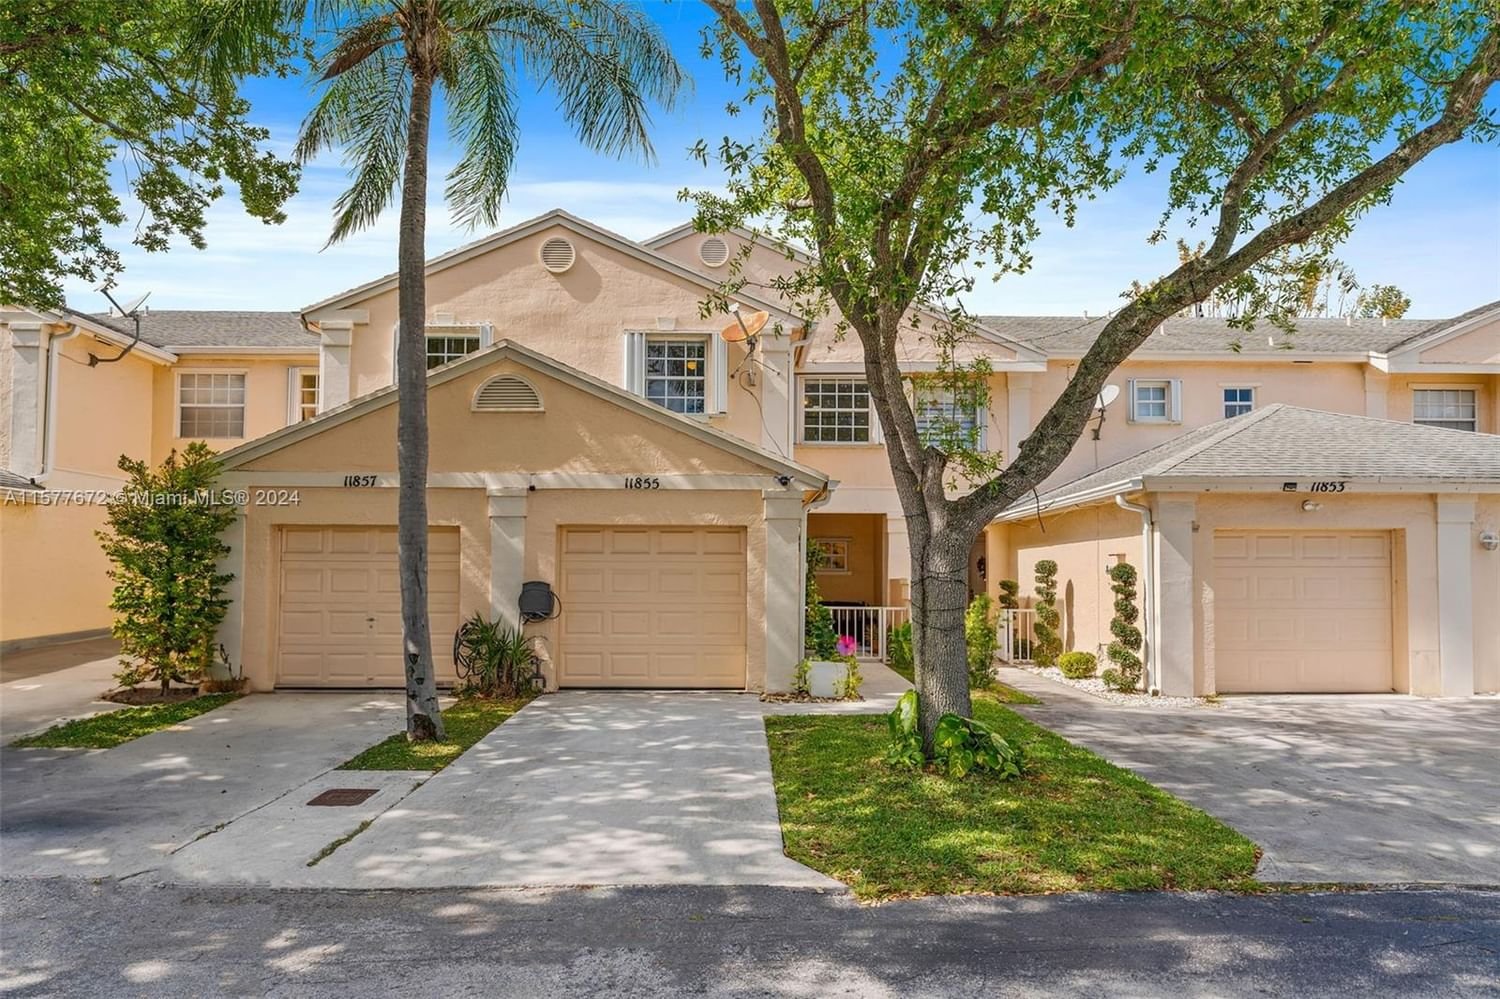 Real estate property located at 11855 99th Ln #11855, Miami-Dade County, AMARETTO, Miami, FL